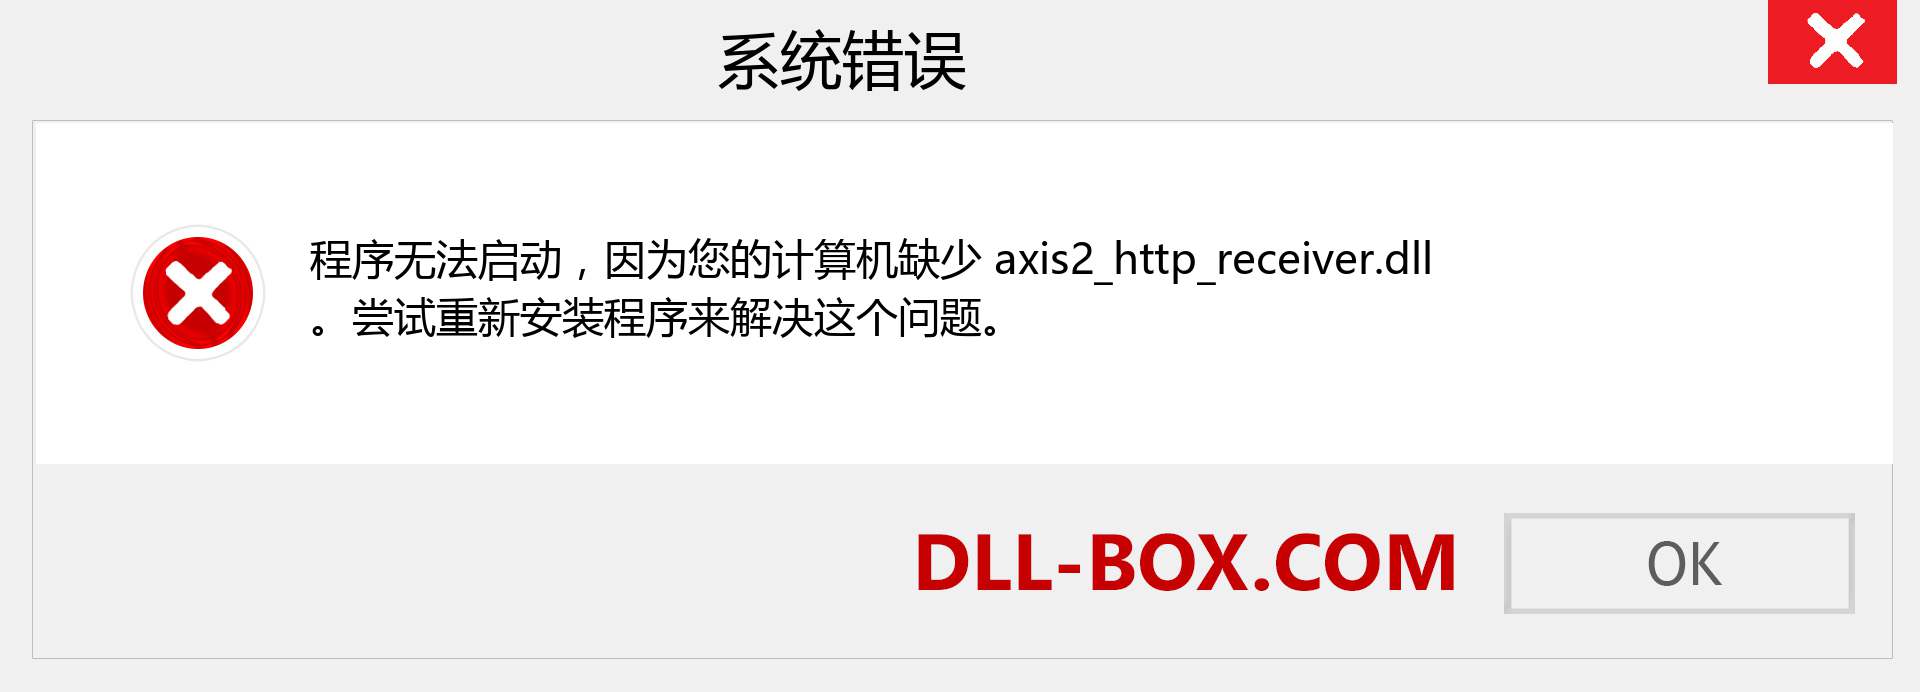 axis2_http_receiver.dll 文件丢失？。 适用于 Windows 7、8、10 的下载 - 修复 Windows、照片、图像上的 axis2_http_receiver dll 丢失错误